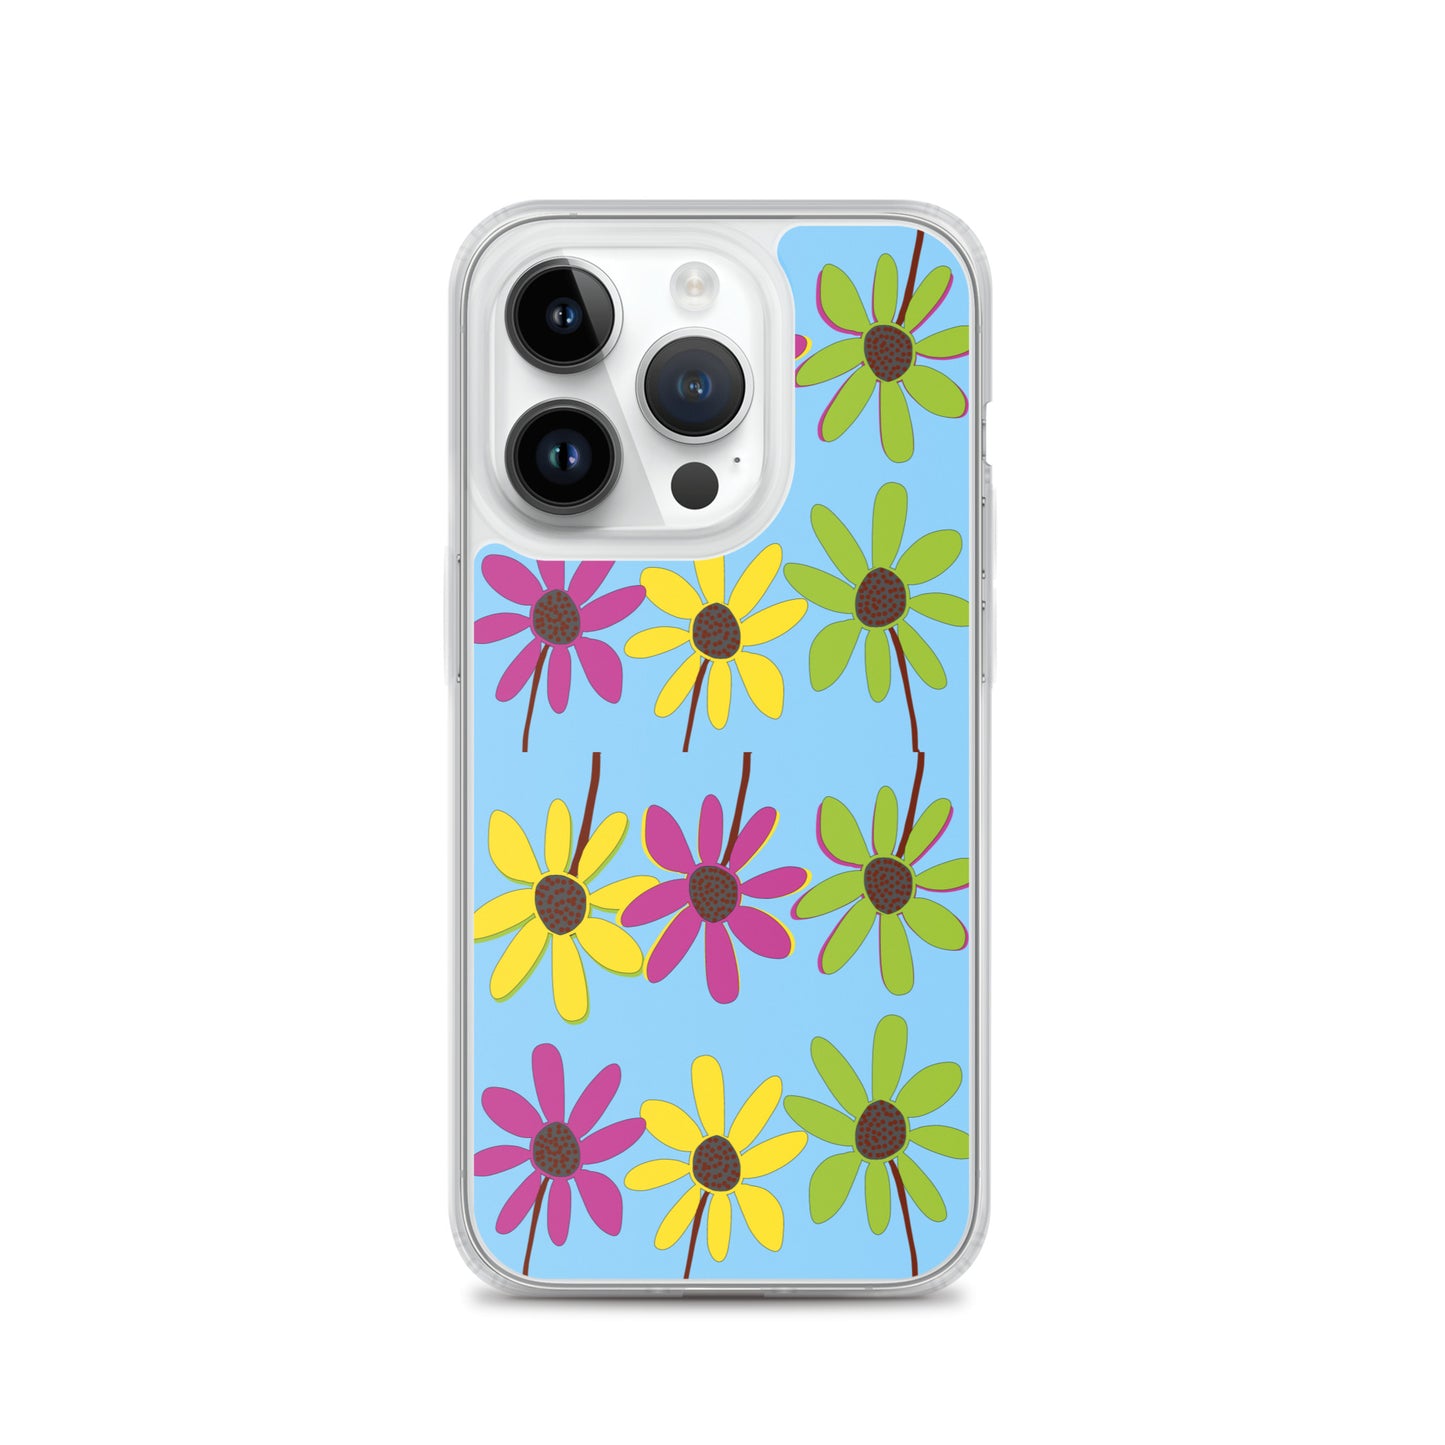 Funda para iPhone con coloridos pétalos de flores dibujados a mano, azul cielo